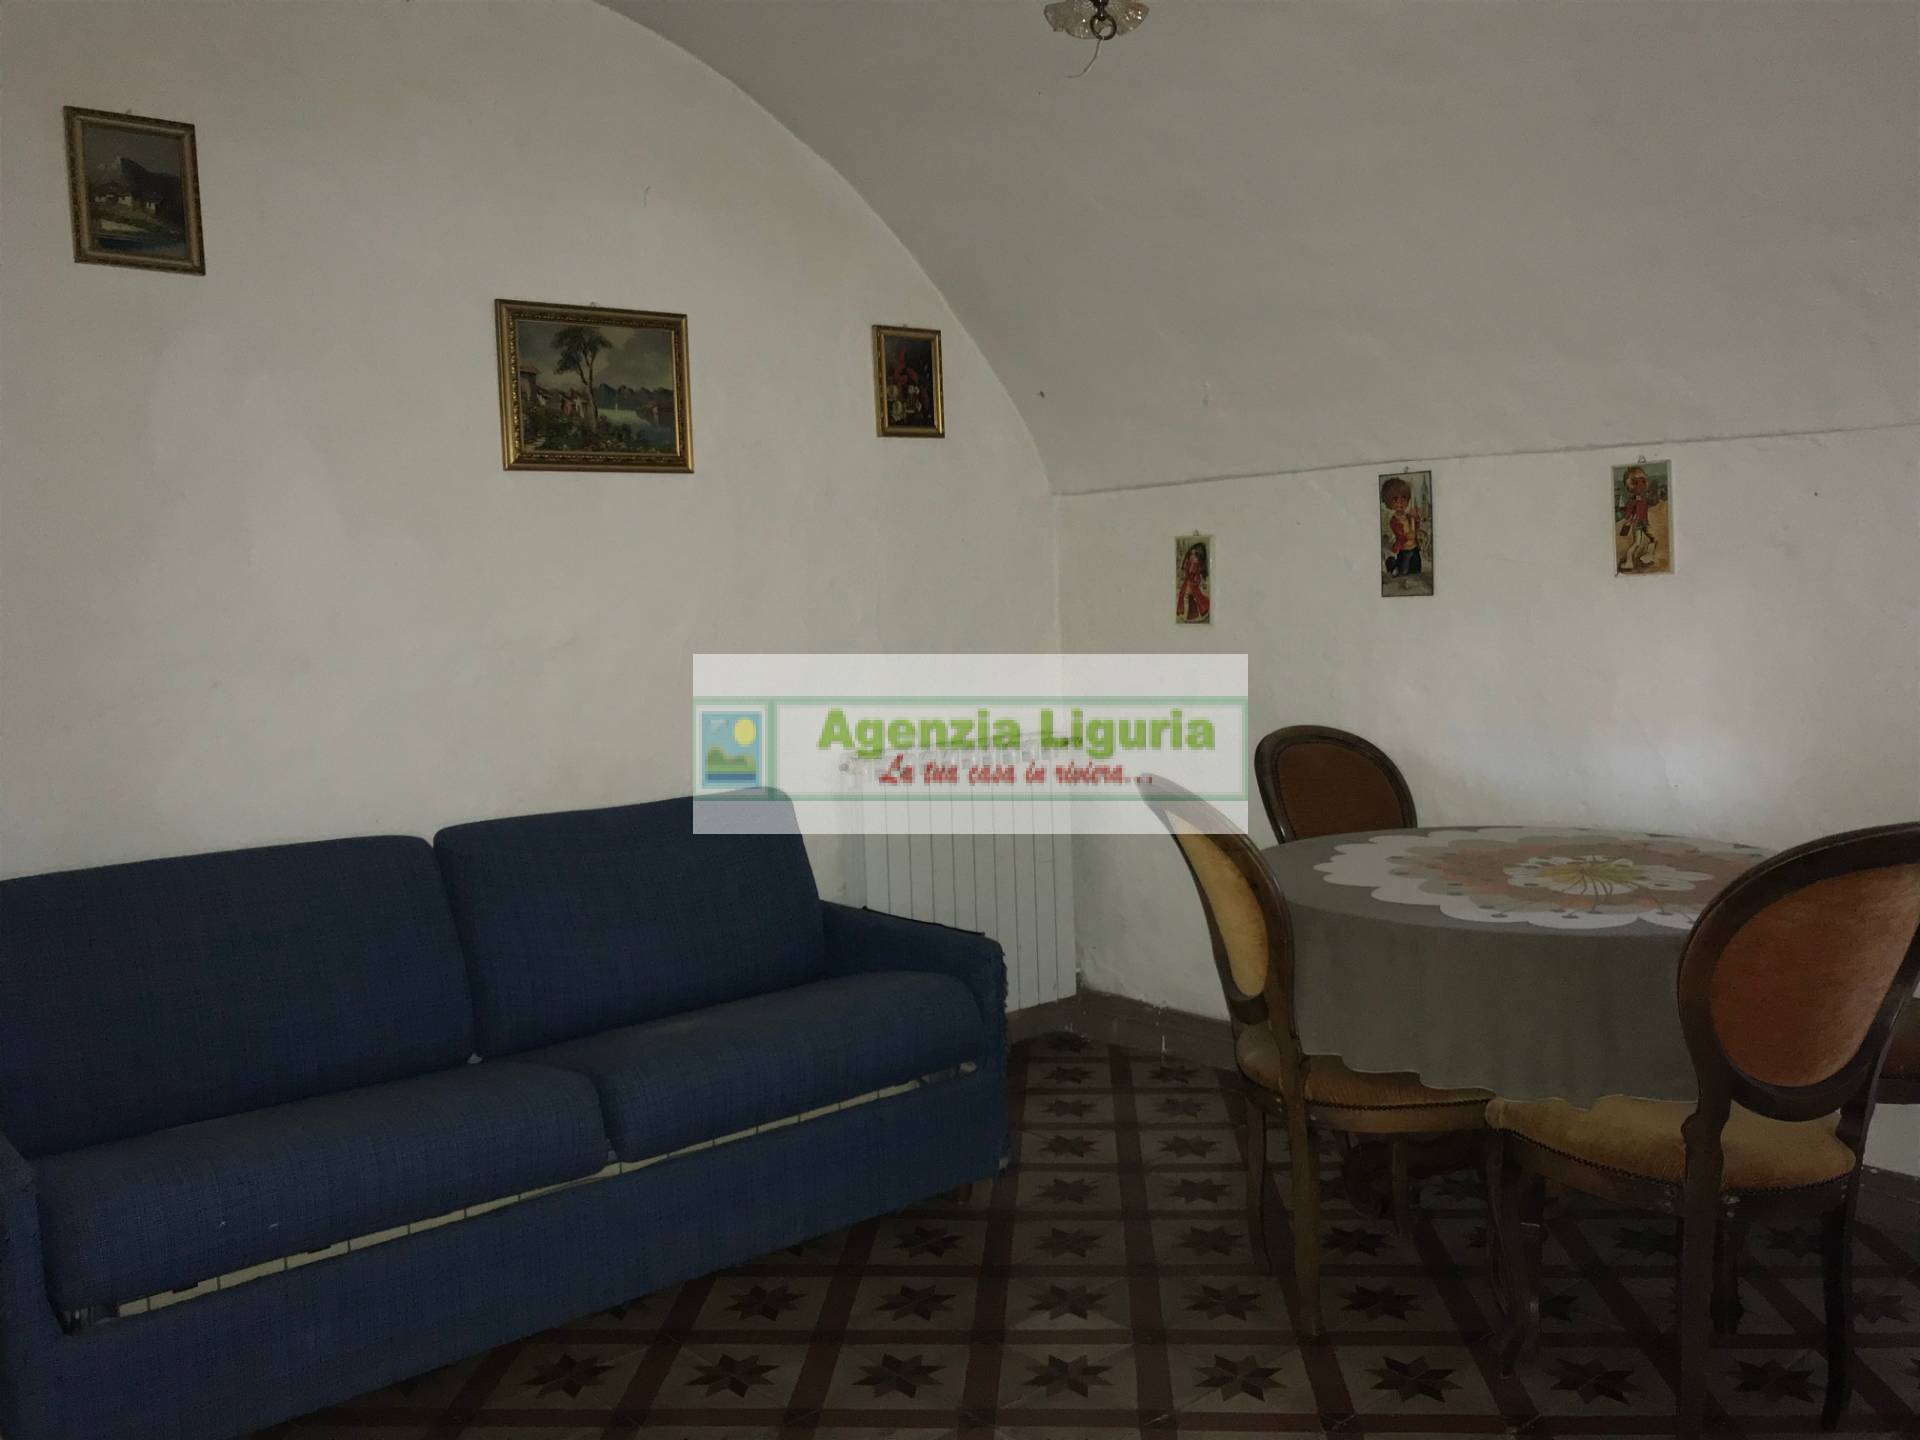 Appartamento in vendita a Perinaldo, 5 locali, prezzo € 49.000 | PortaleAgenzieImmobiliari.it